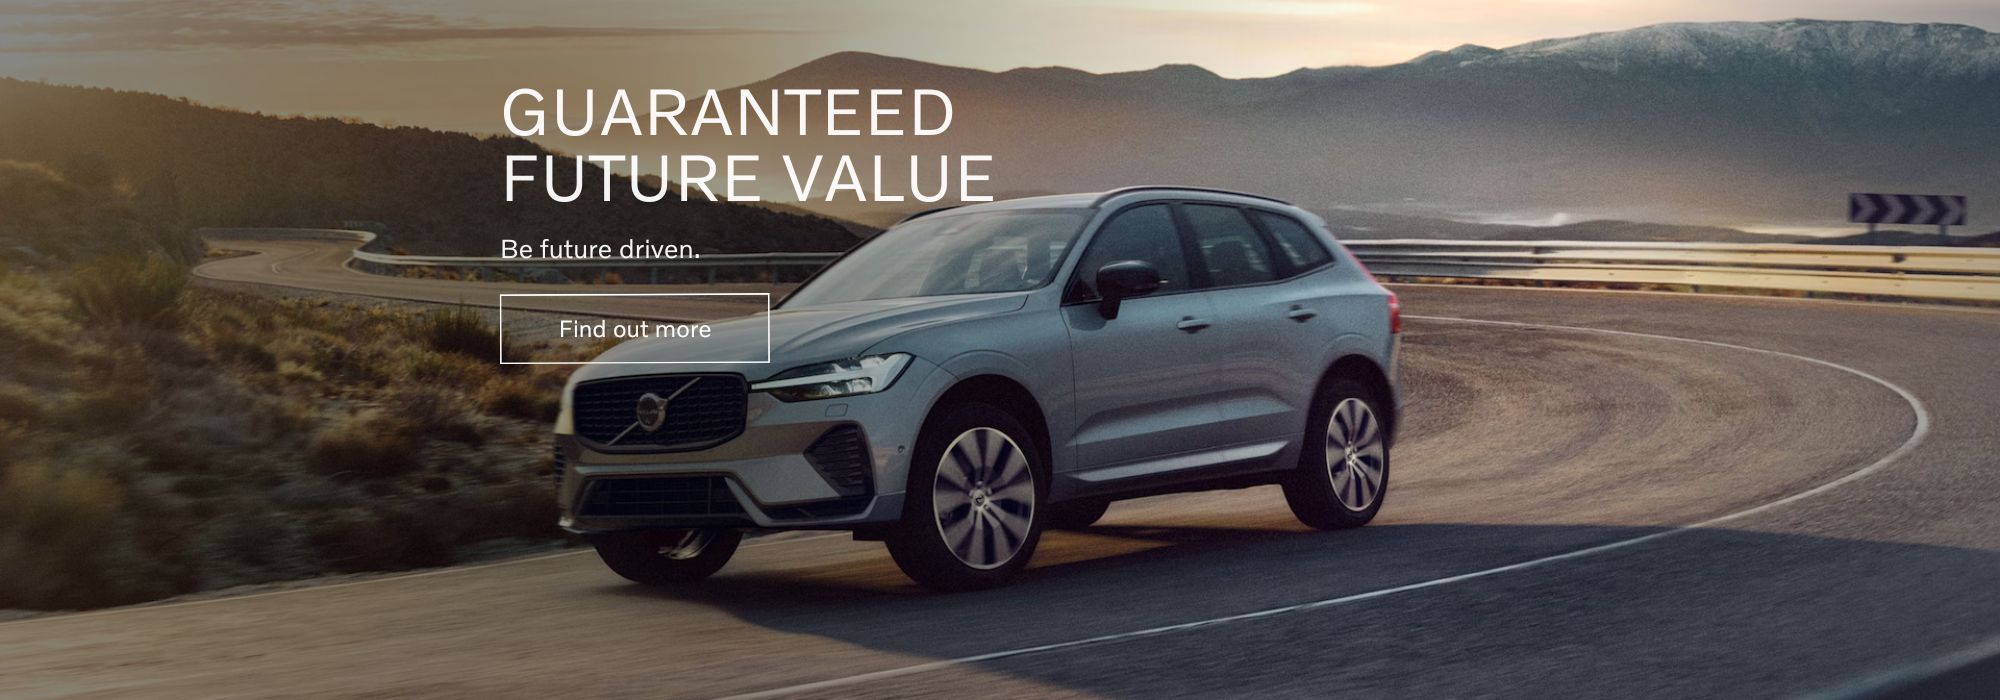 Volvo Cars - Guaranteed Future Value. Be future driven.